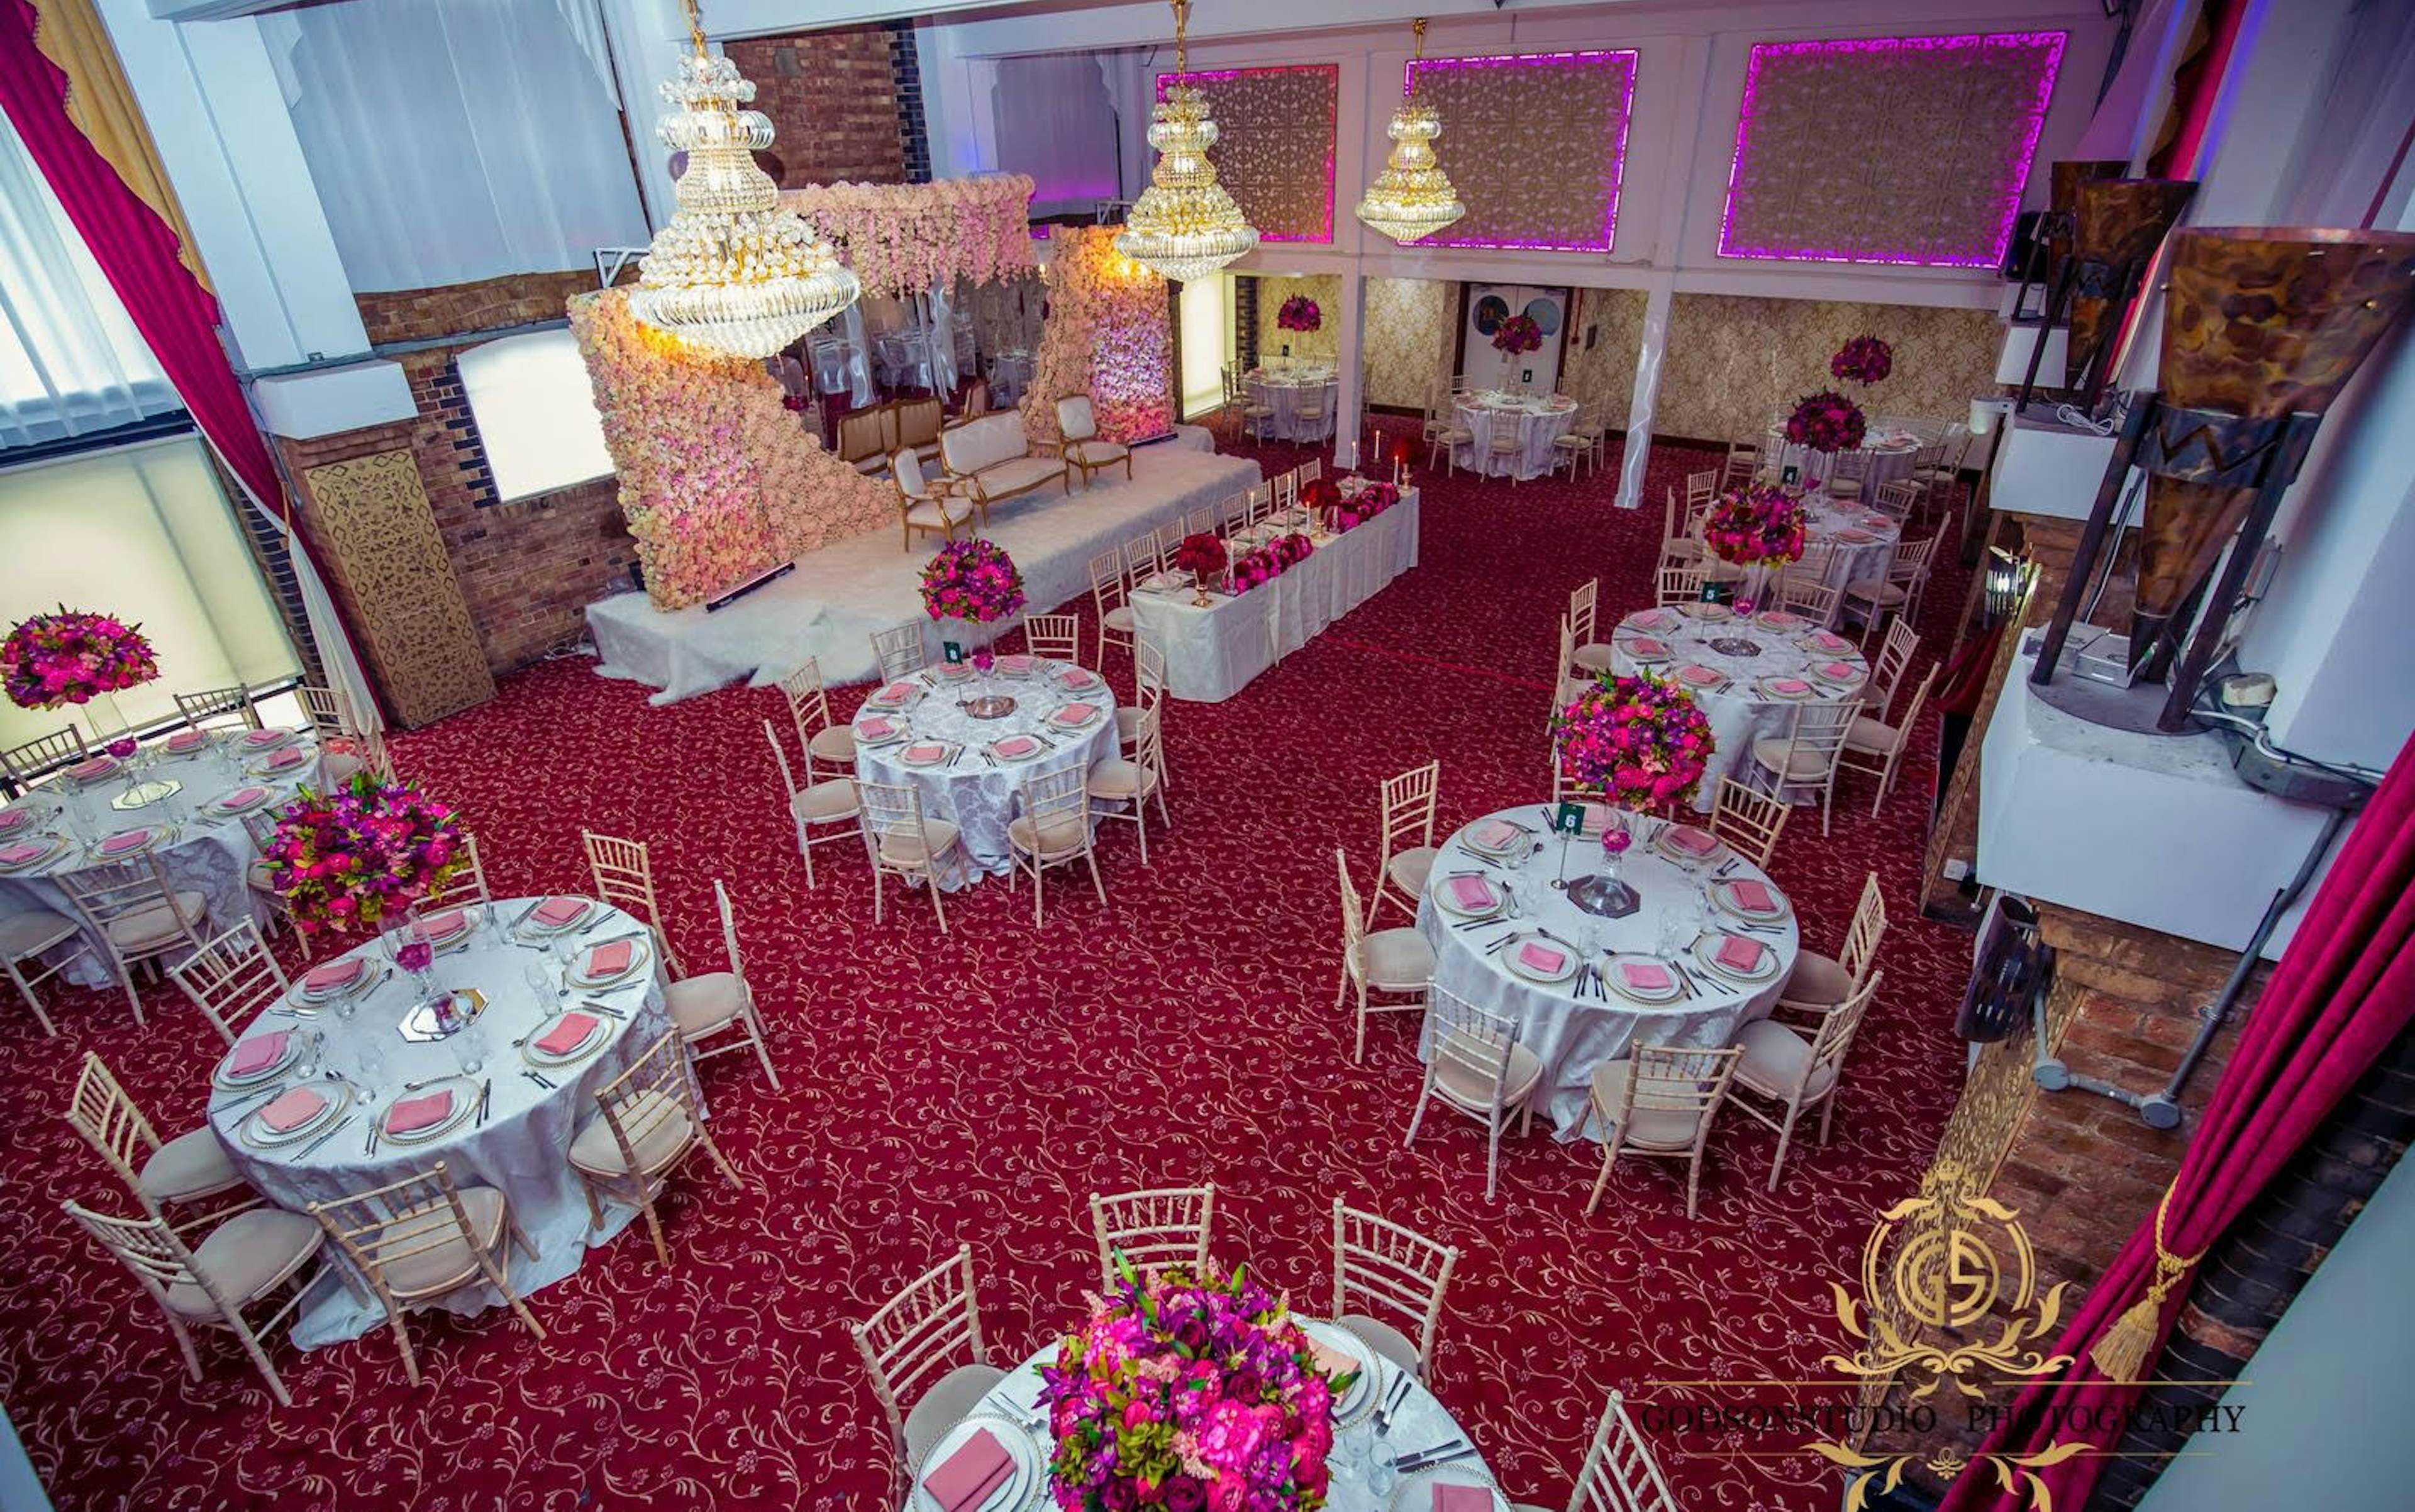 Regents Lake Banqueting Venue - Lakeview Suite image 1